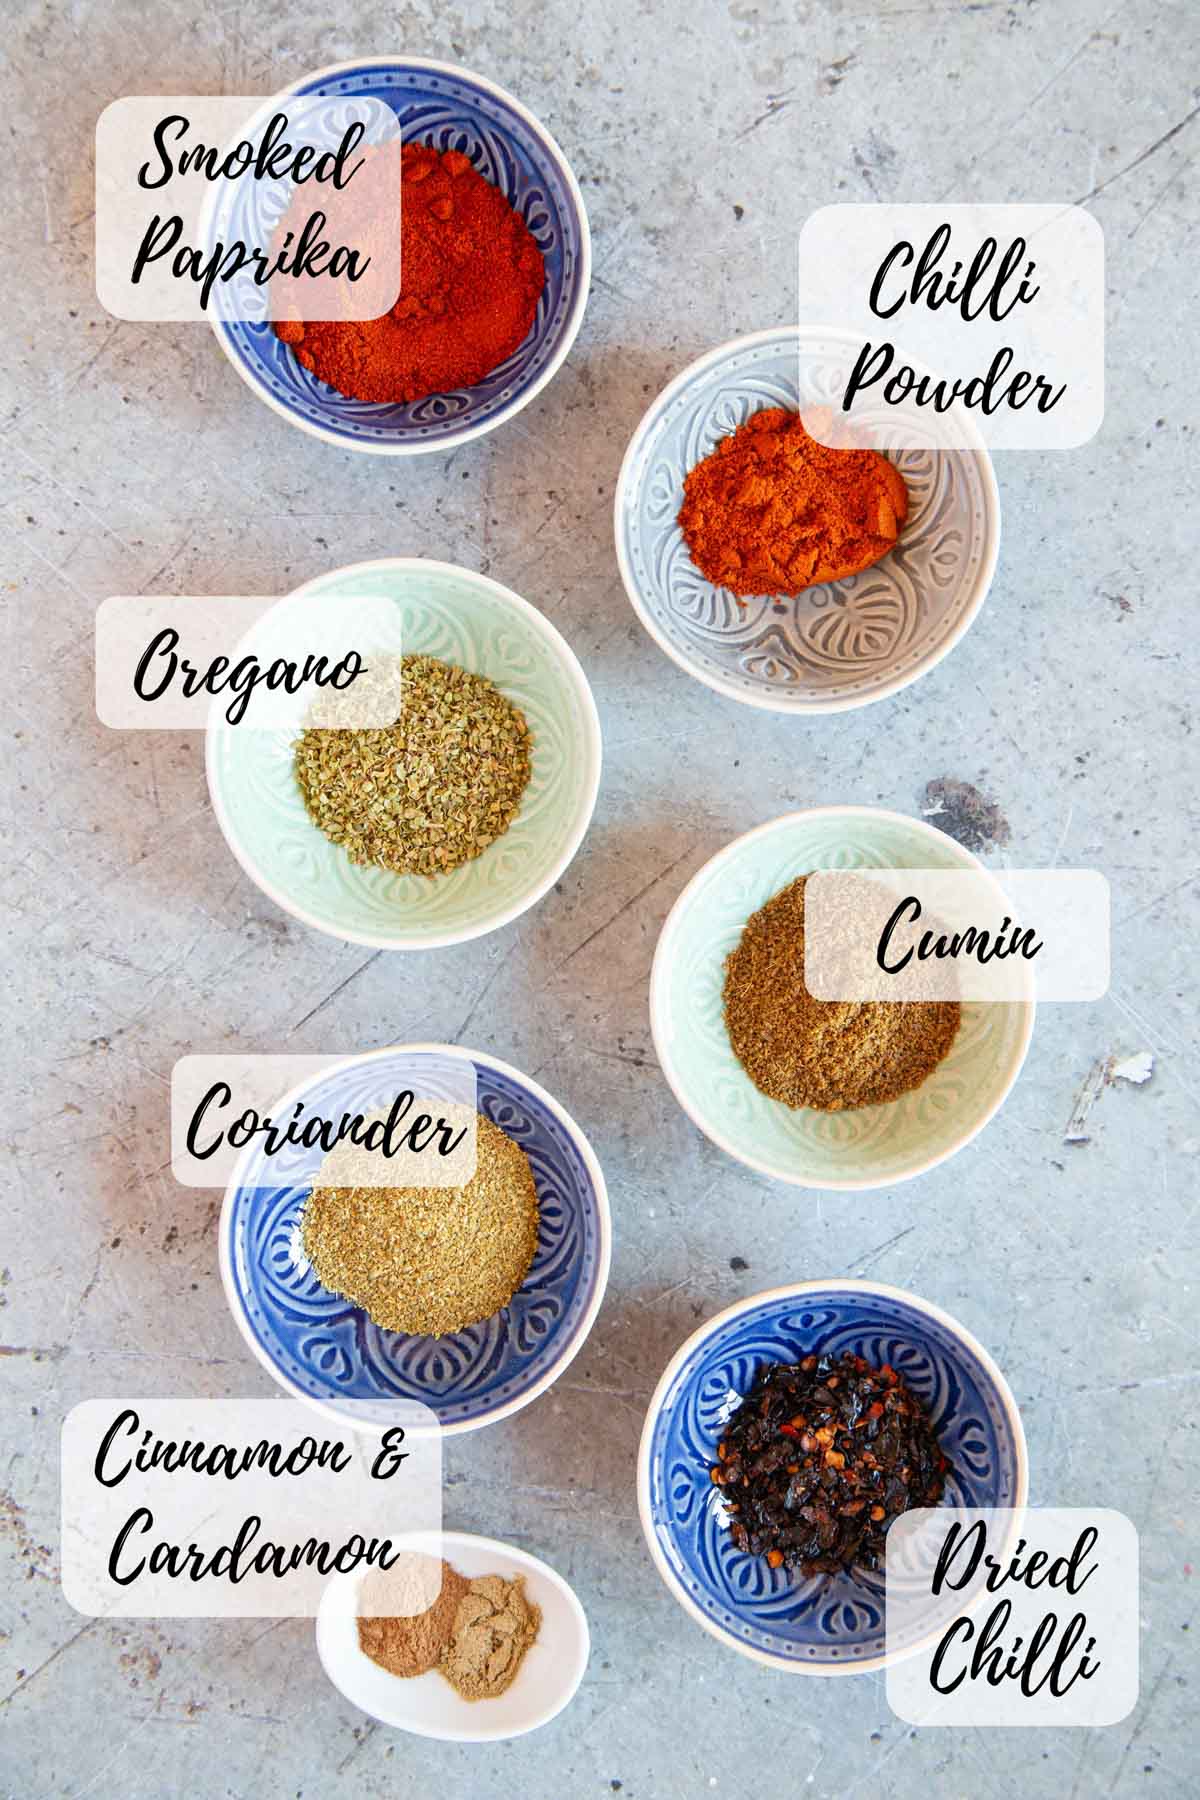 Ingredients for the seasoning